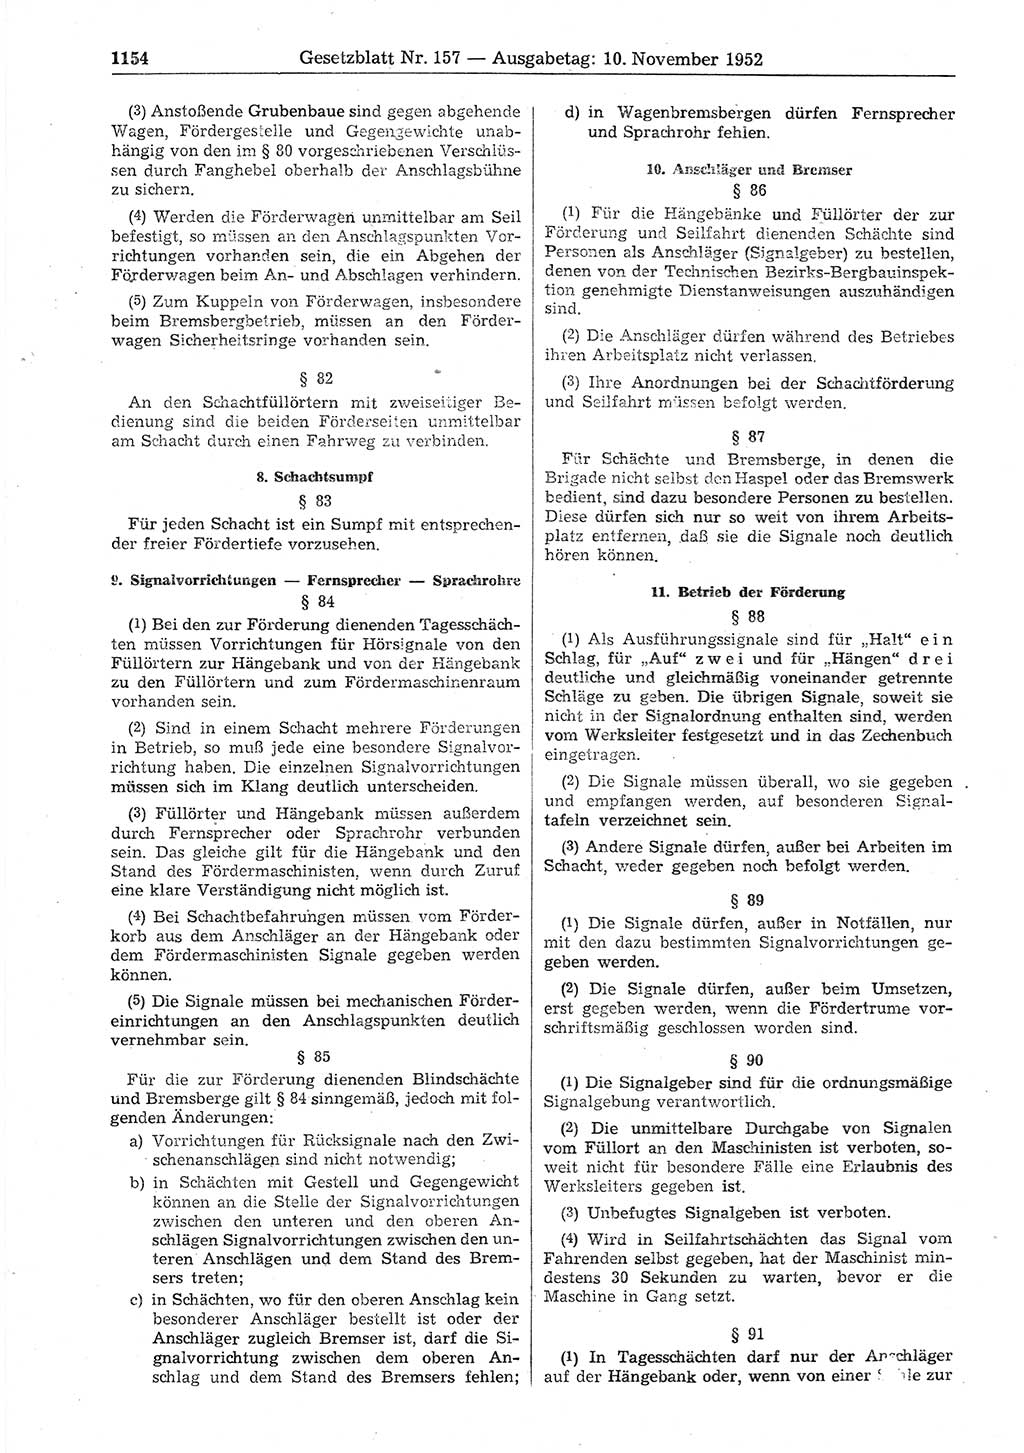 Gesetzblatt (GBl.) der Deutschen Demokratischen Republik (DDR) 1952, Seite 1154 (GBl. DDR 1952, S. 1154)